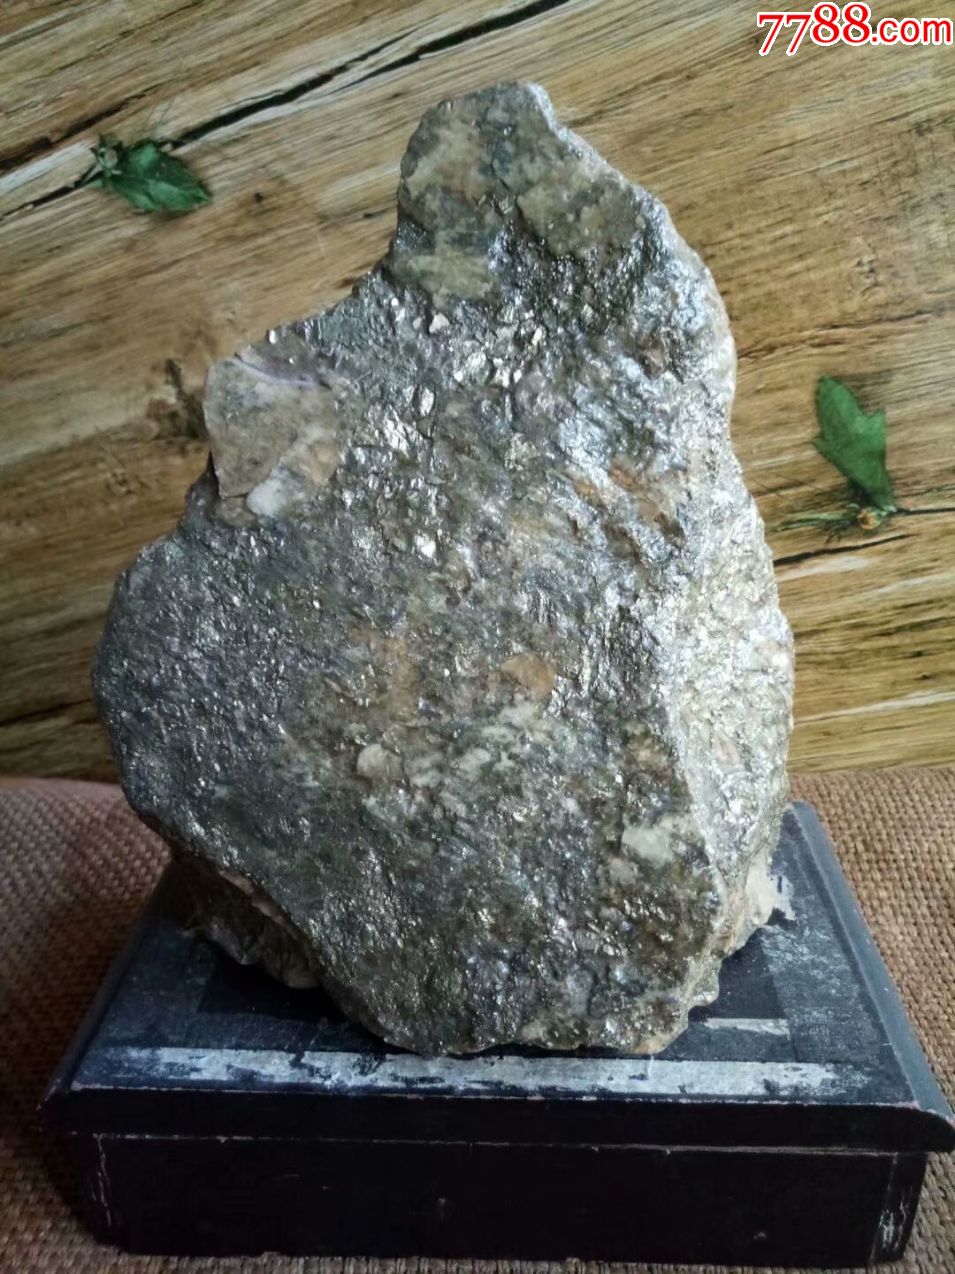 天然铜矿石摆件,原石_价格199.